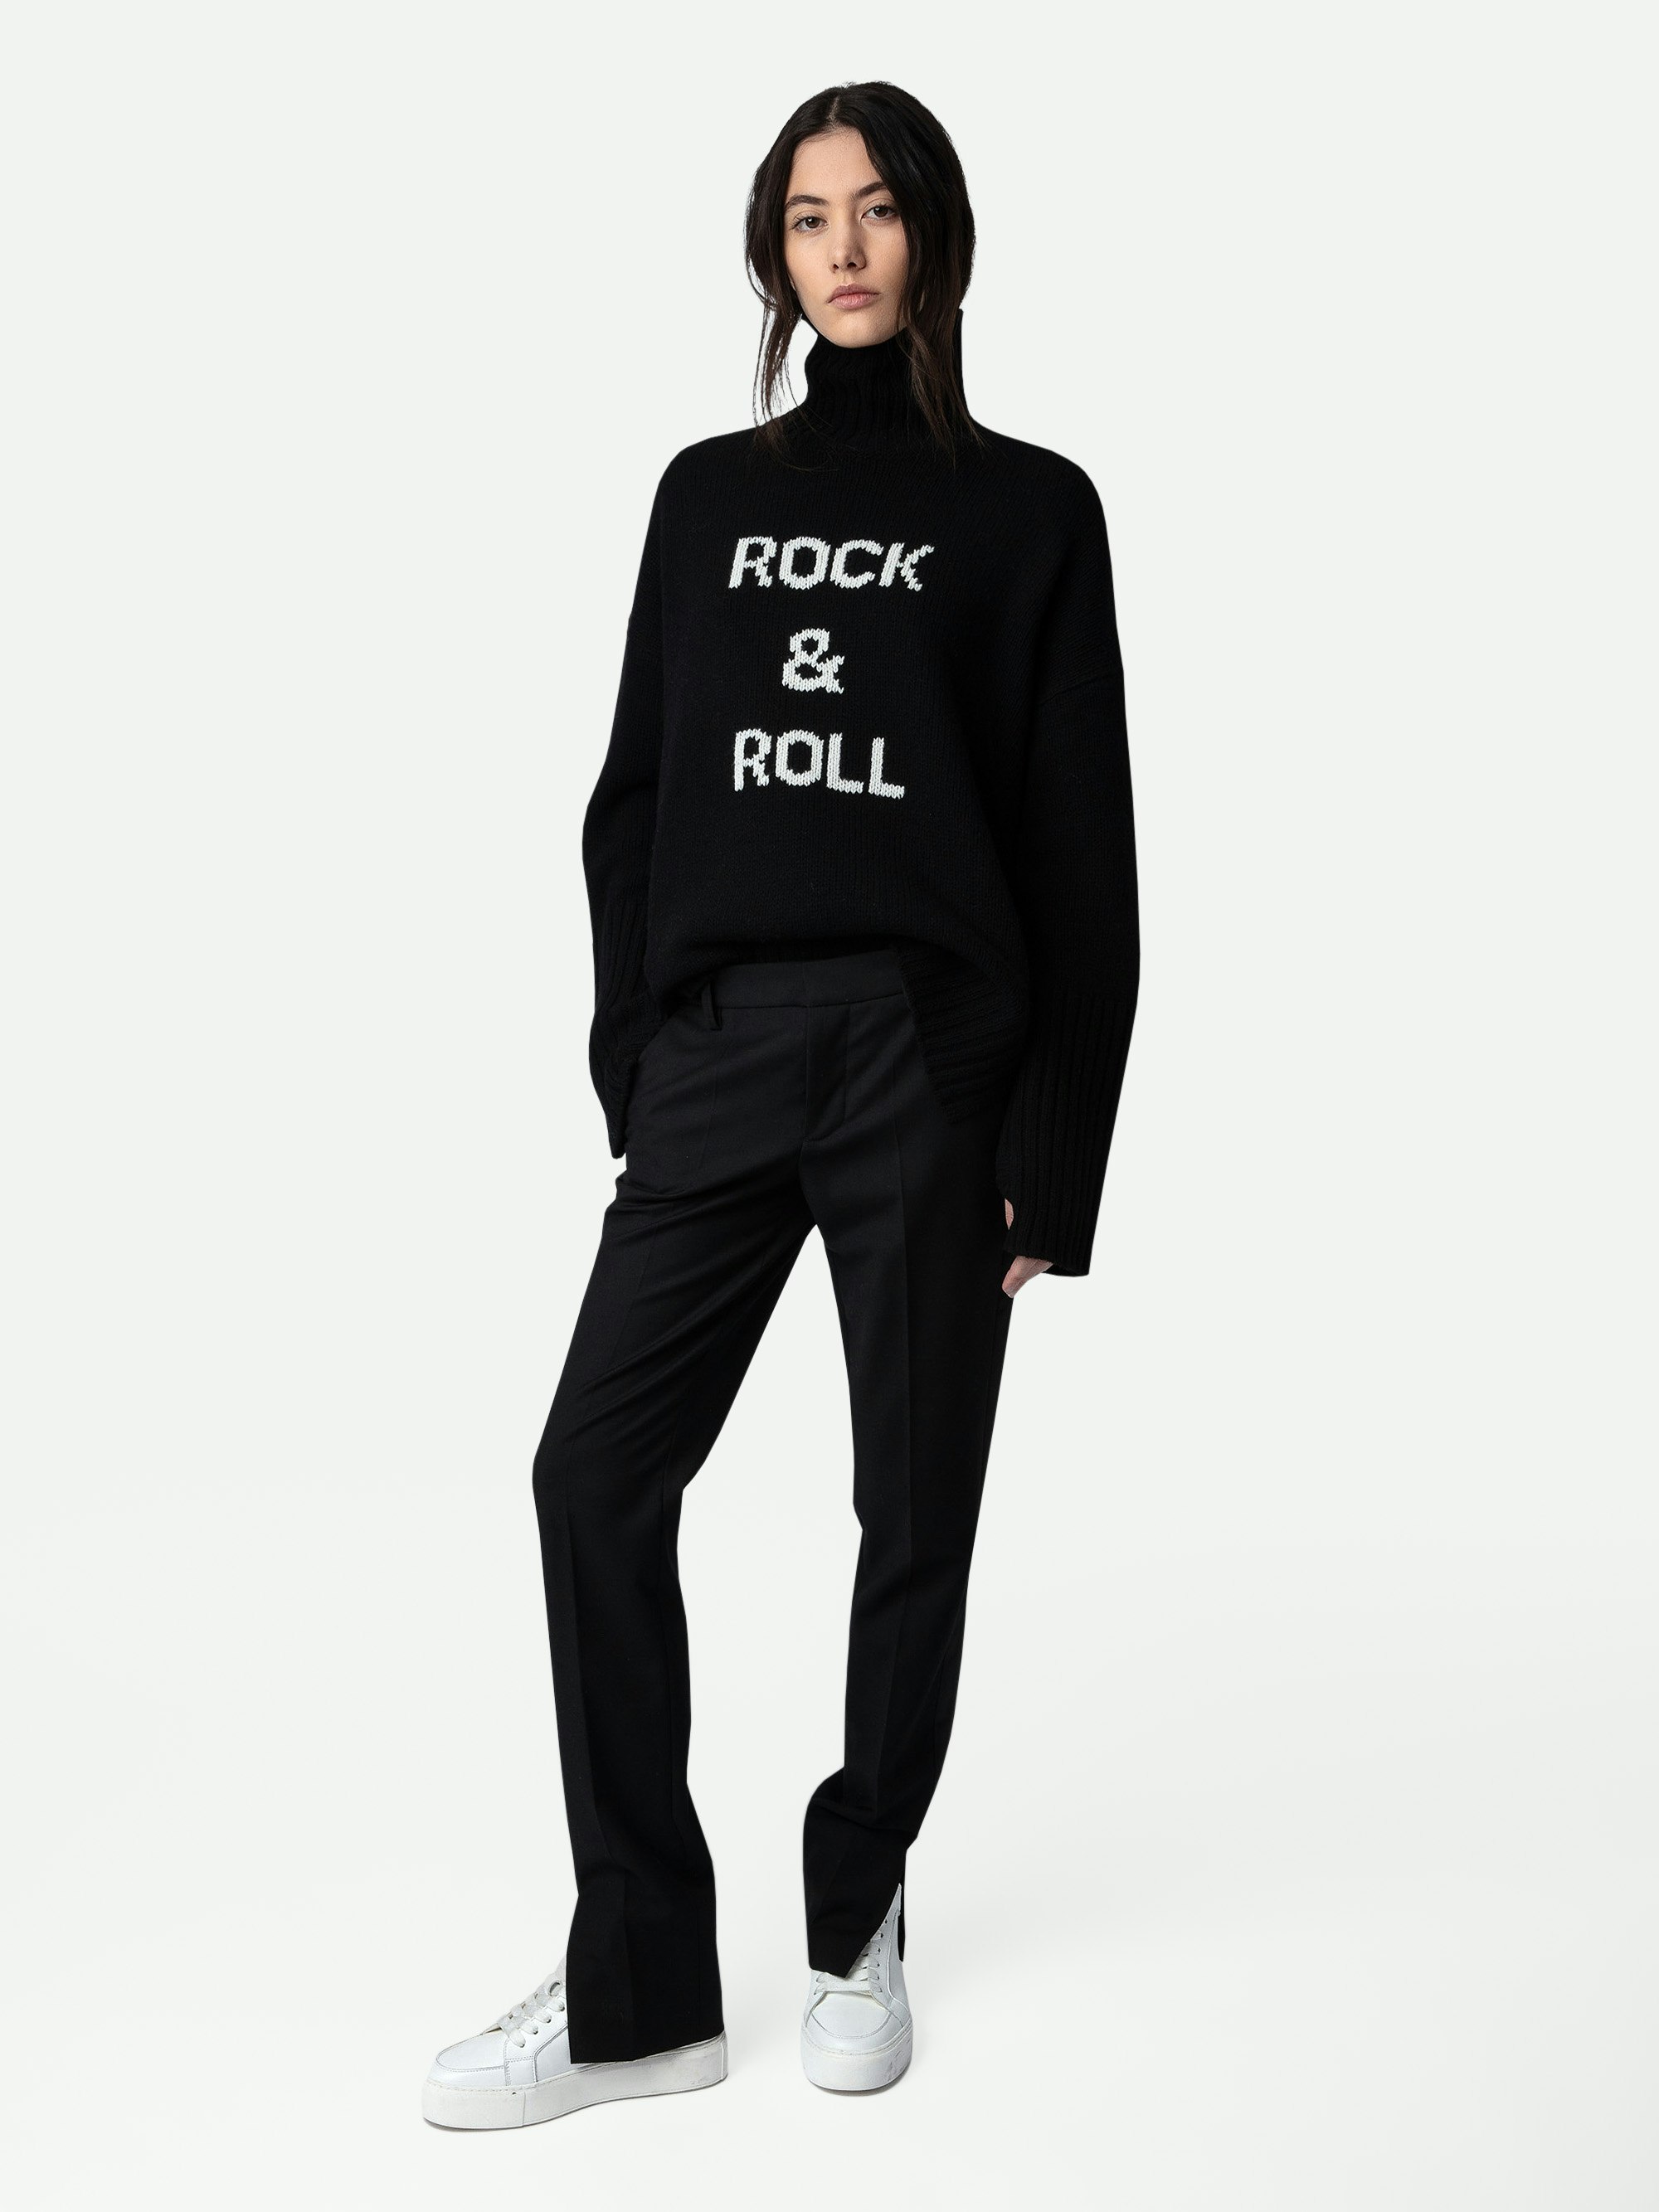 Alma Rock & Roll Jumper 100% Wool - Women’s black turtleneck 100% wool jumper with slogan